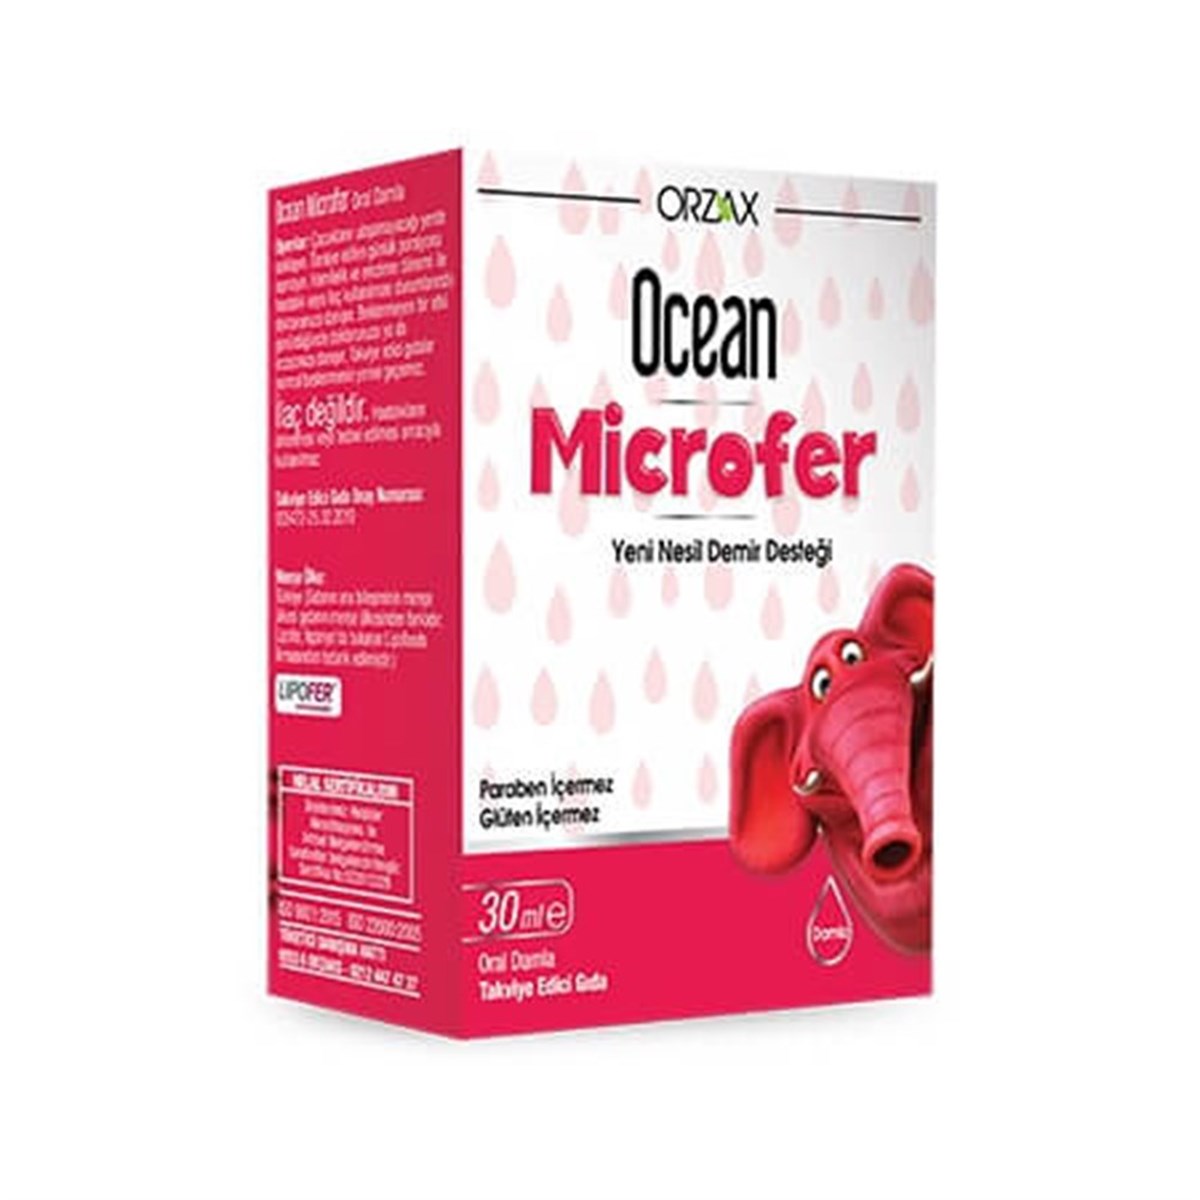 Ocean Microfer 30ml Damla